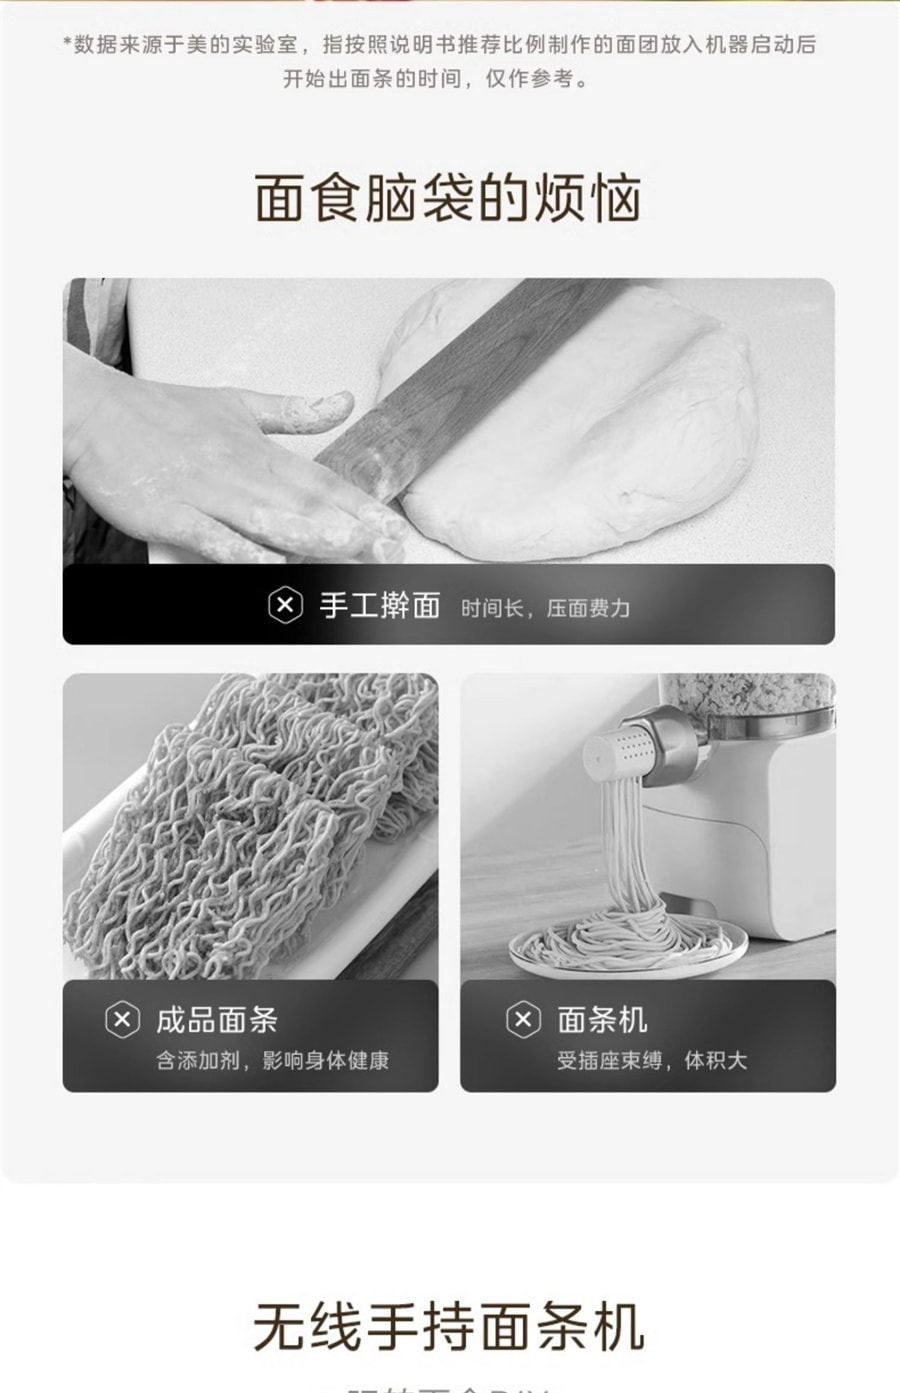 【中國直郵】美的 麵條機家用全自動手持壓面機小型電動餄絡機和麵壓麵條機 白色5模具+3工具